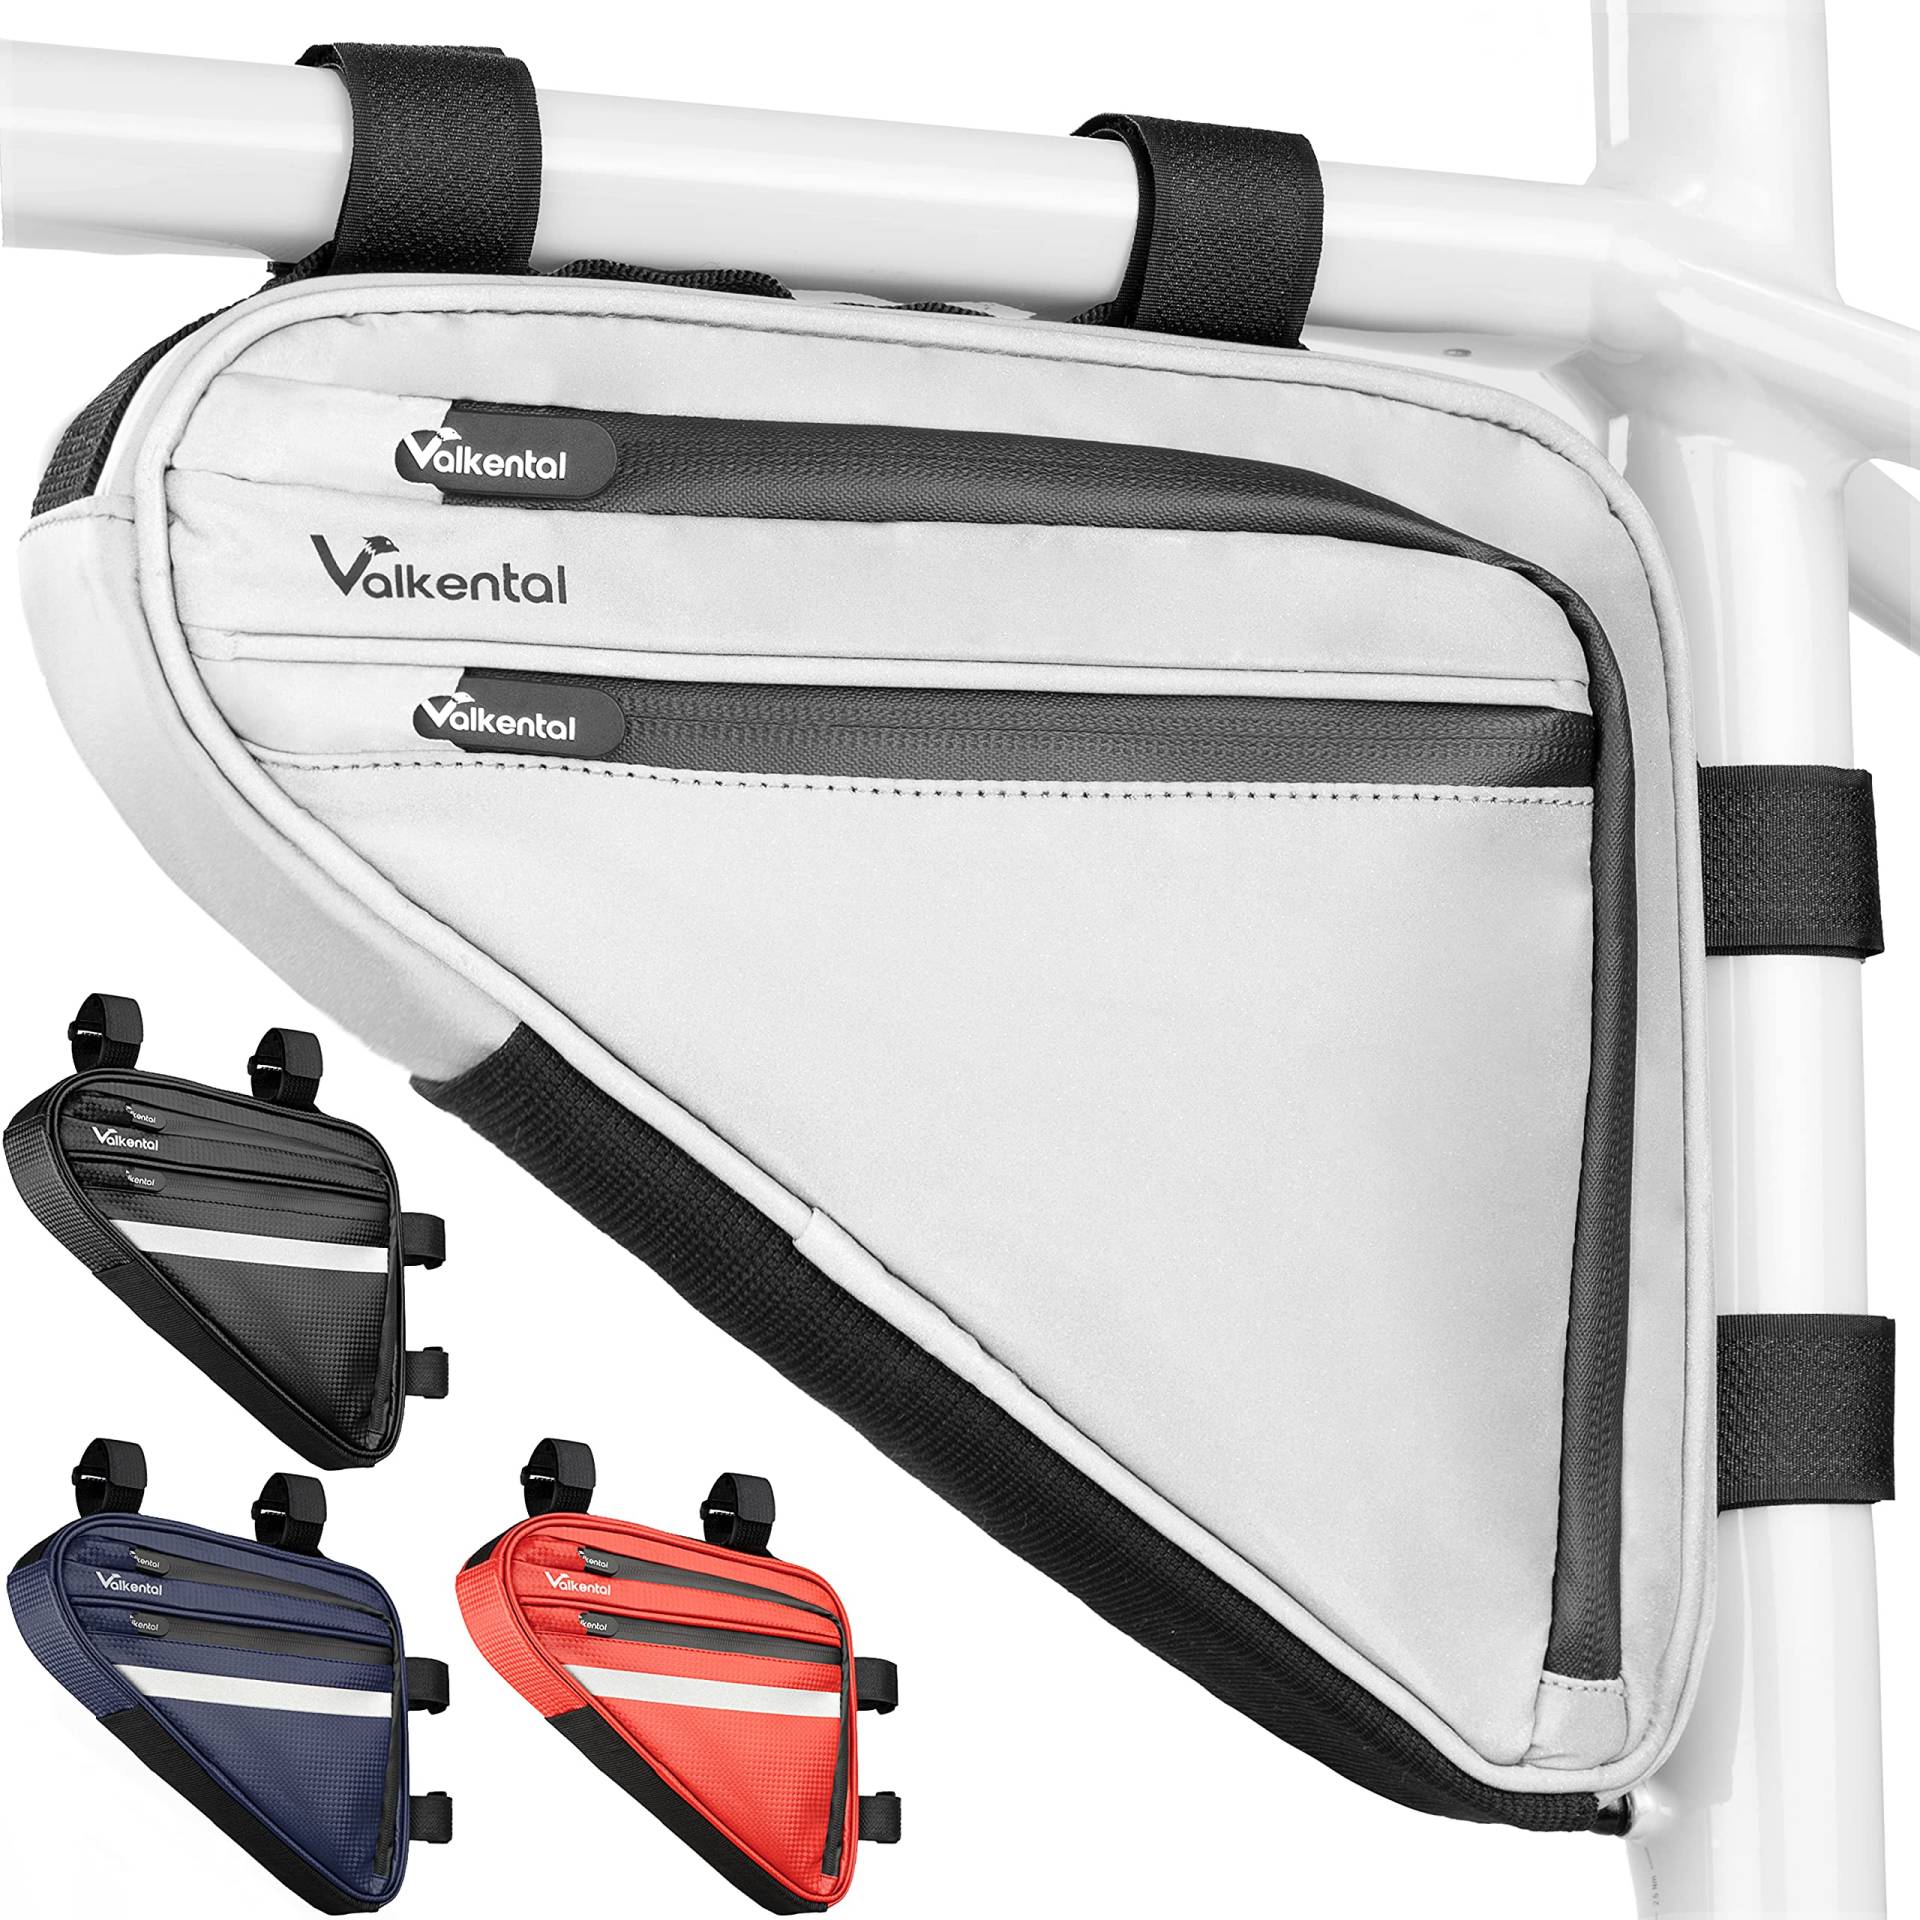 Valkental - Wasserfeste Rahmentasche mit viel Platz - 1,5L Volumen - Fahrradtasche mit Reflektoren und Praktischen Fächern von Valkental